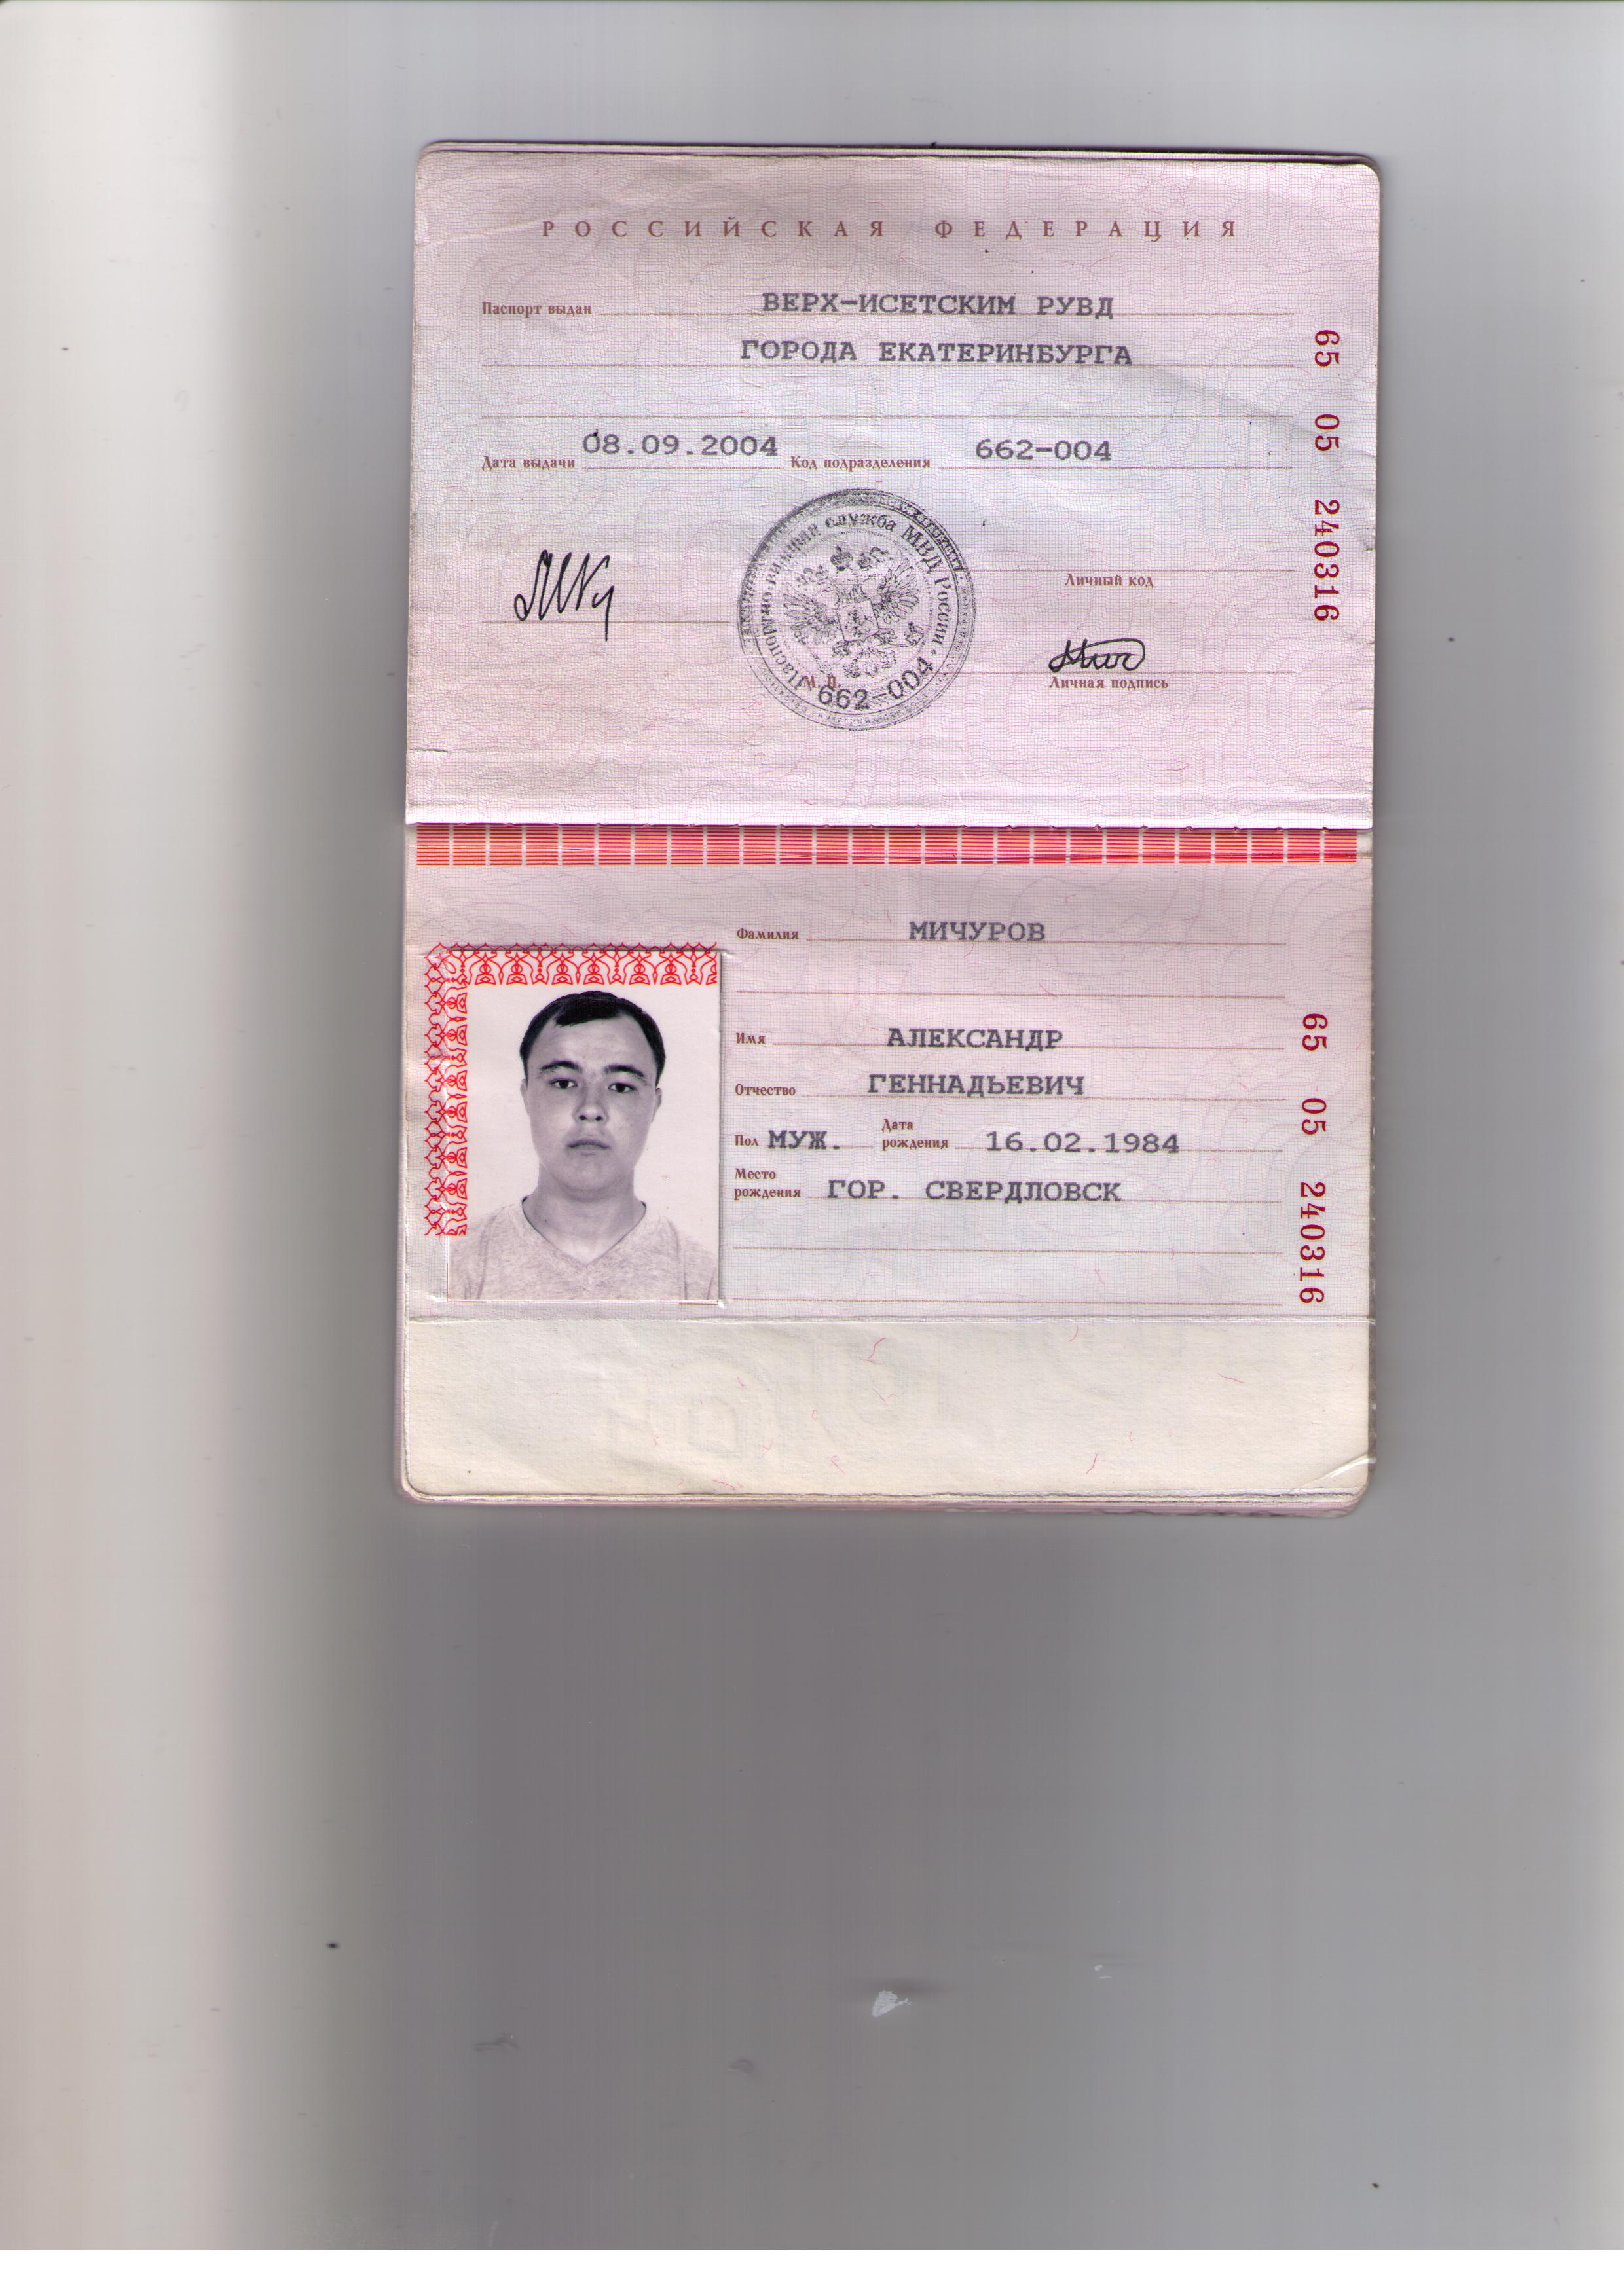 Код подразделения рб. Паспортные данные.